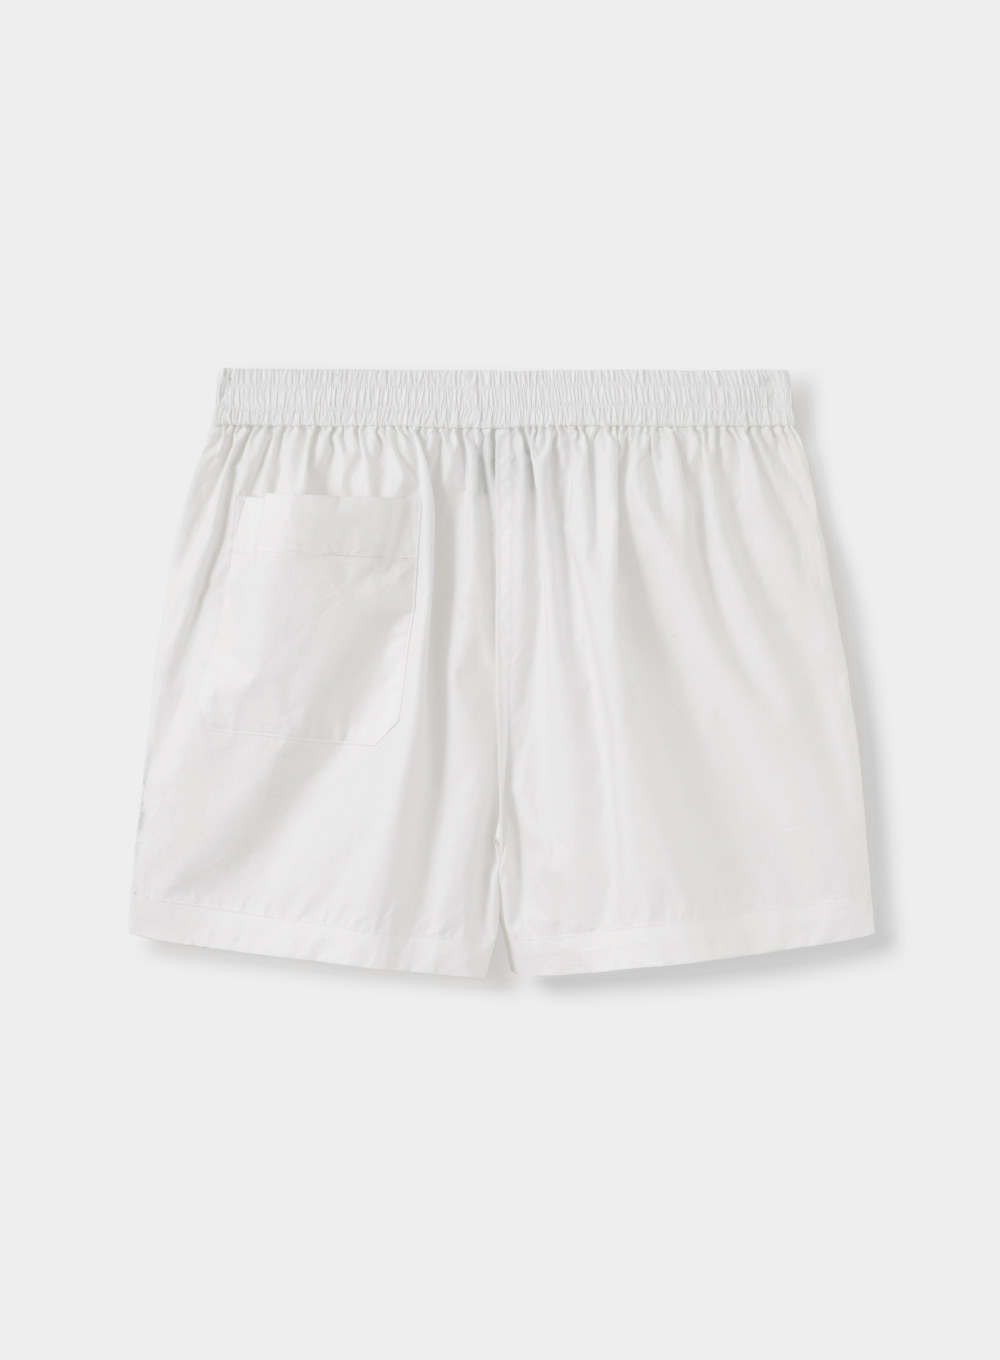 [6월 16일 예약배송]Lowham Banding Half Pants - Bright White